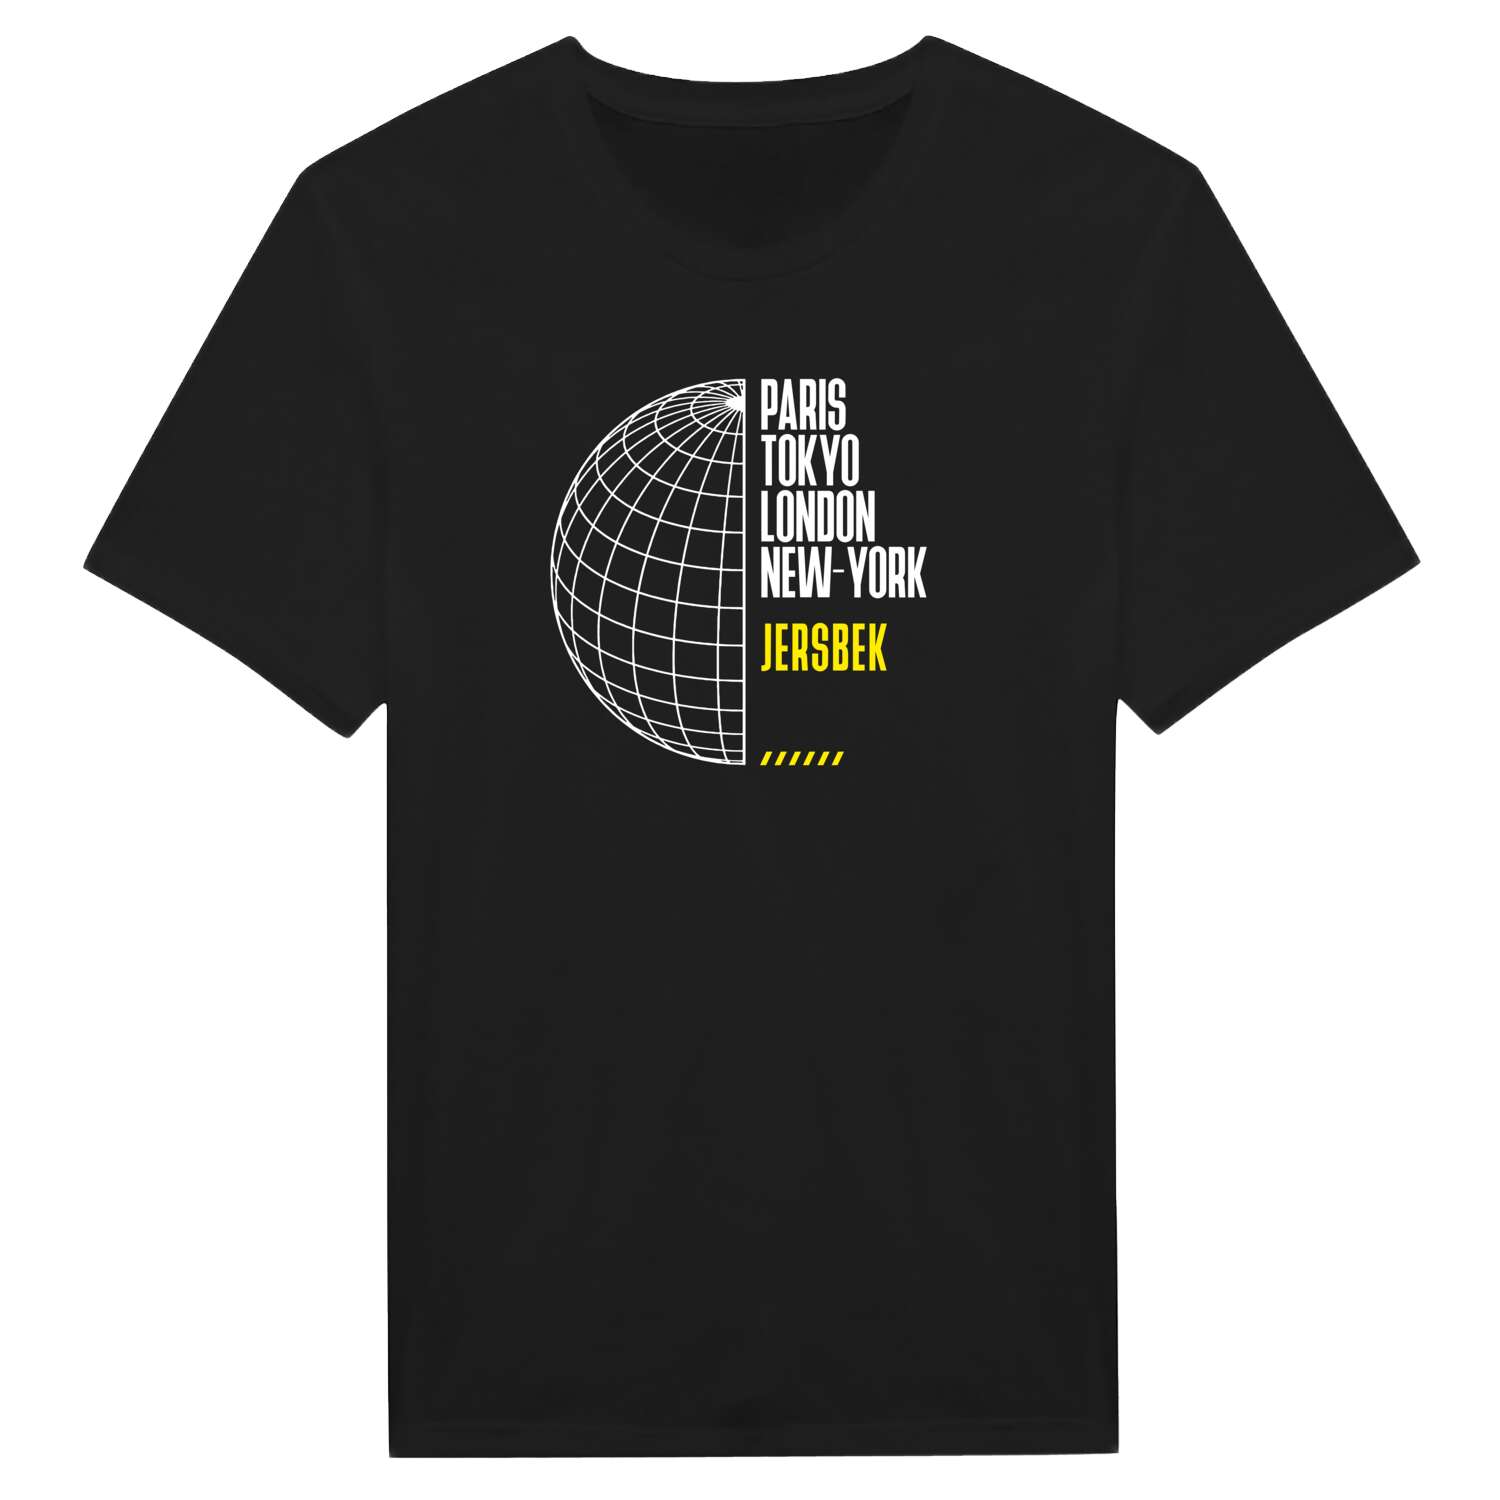 Jersbek T-Shirt »Paris Tokyo London«